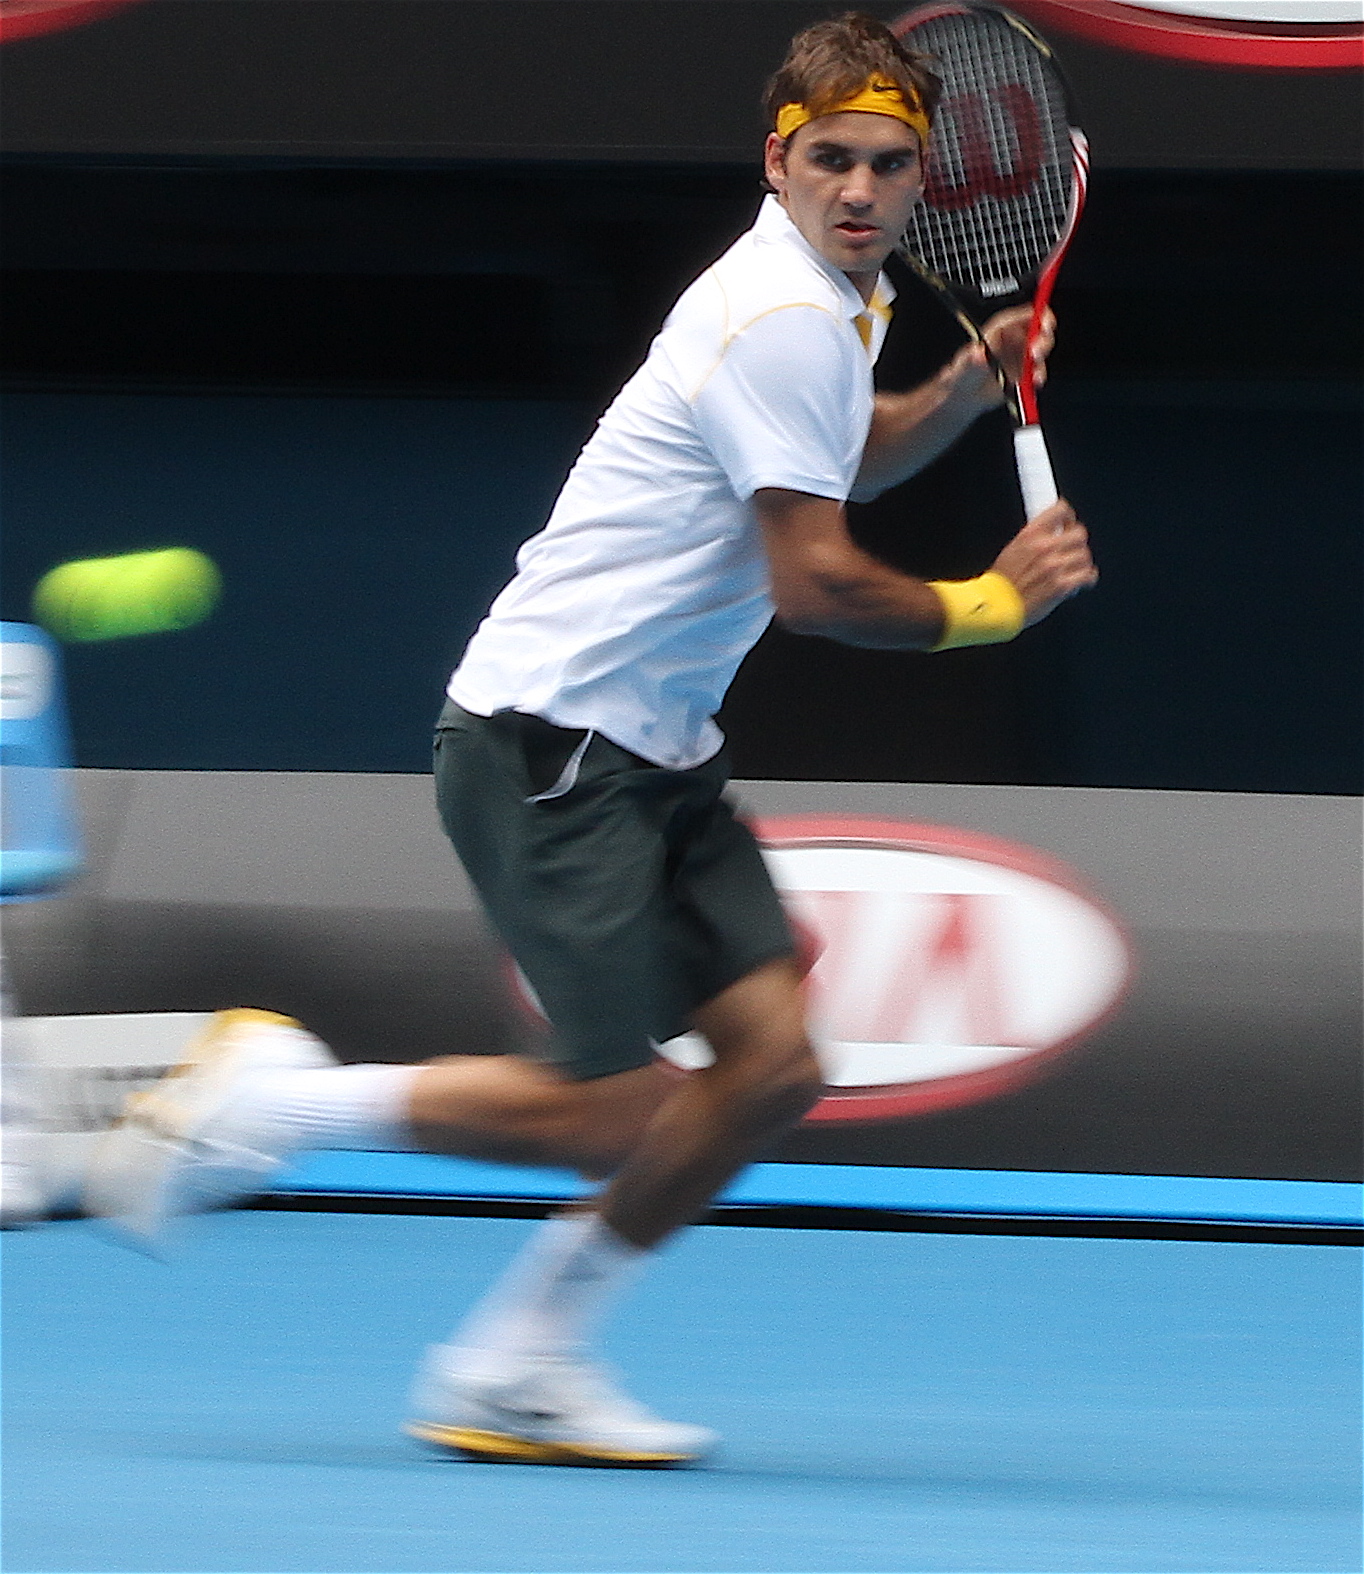 File:Roger Federer 2011.jpg - Wikimedia Commons1364 x 1574